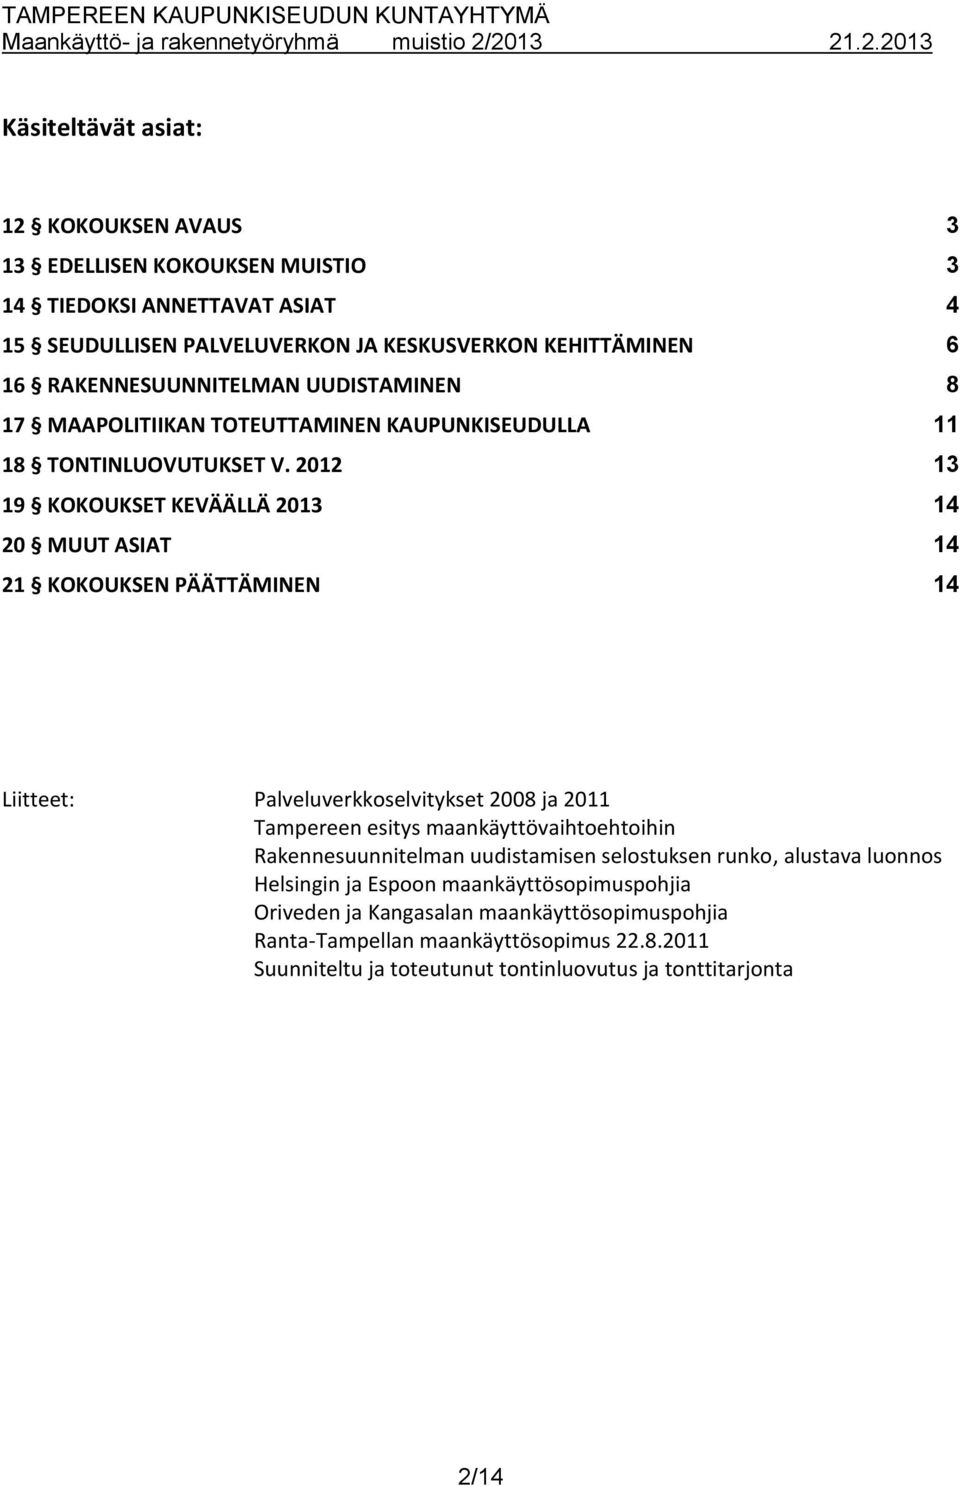 2012 13 19 KOKOUKSET KEVÄÄLLÄ 2013 14 20 MUUT ASIAT 14 21 KOKOUKSEN PÄÄTTÄMINEN 14 Liitteet: Palveluverkkoselvitykset 2008 ja 2011 Tampereen esitys maankäyttövaihtoehtoihin